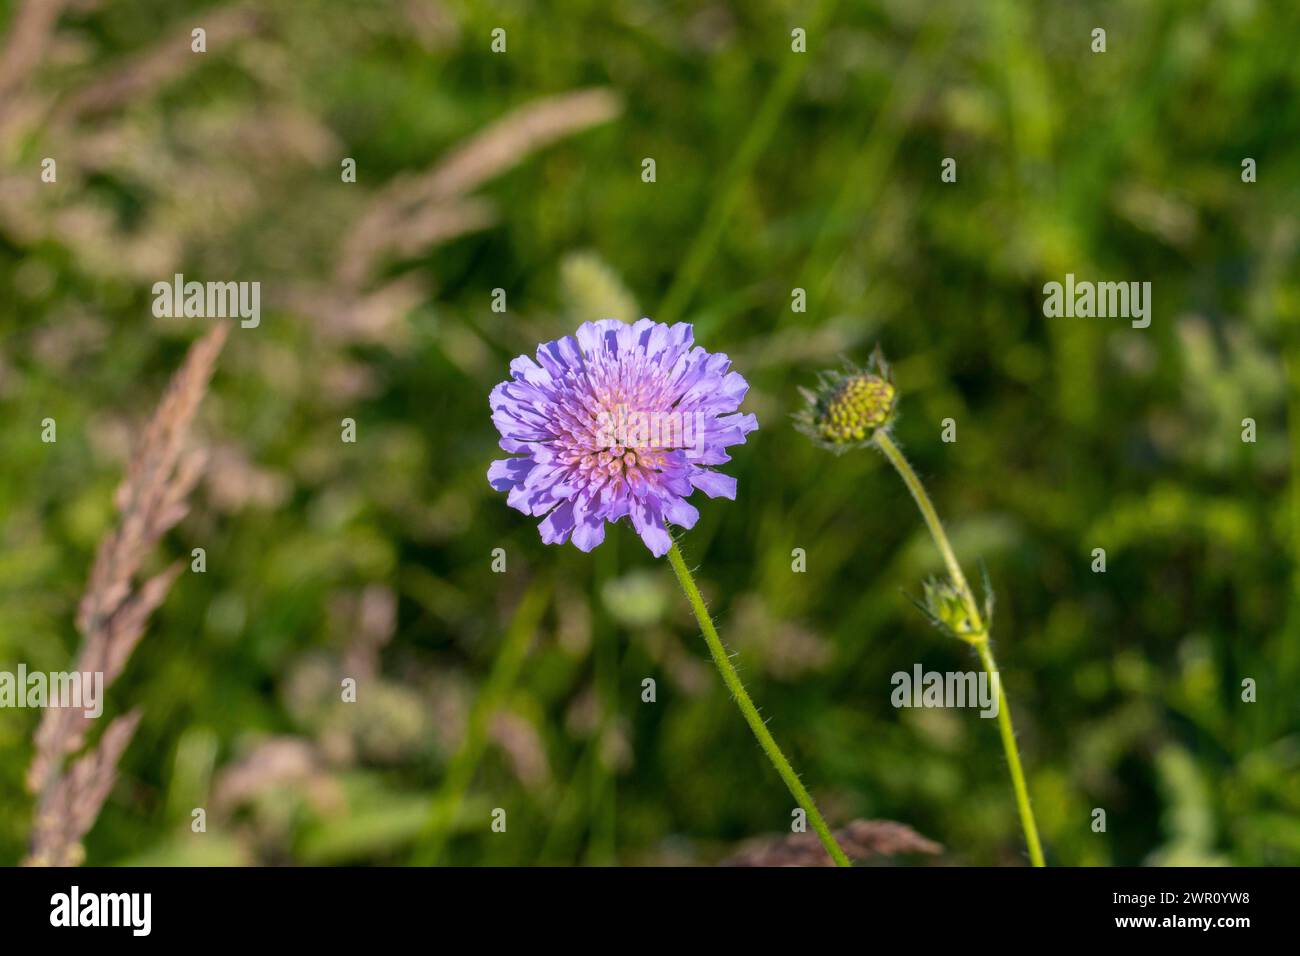 Wiesen Witwenblume, Knautia arvensis,  auf einer grünen Wiese Stock Photo